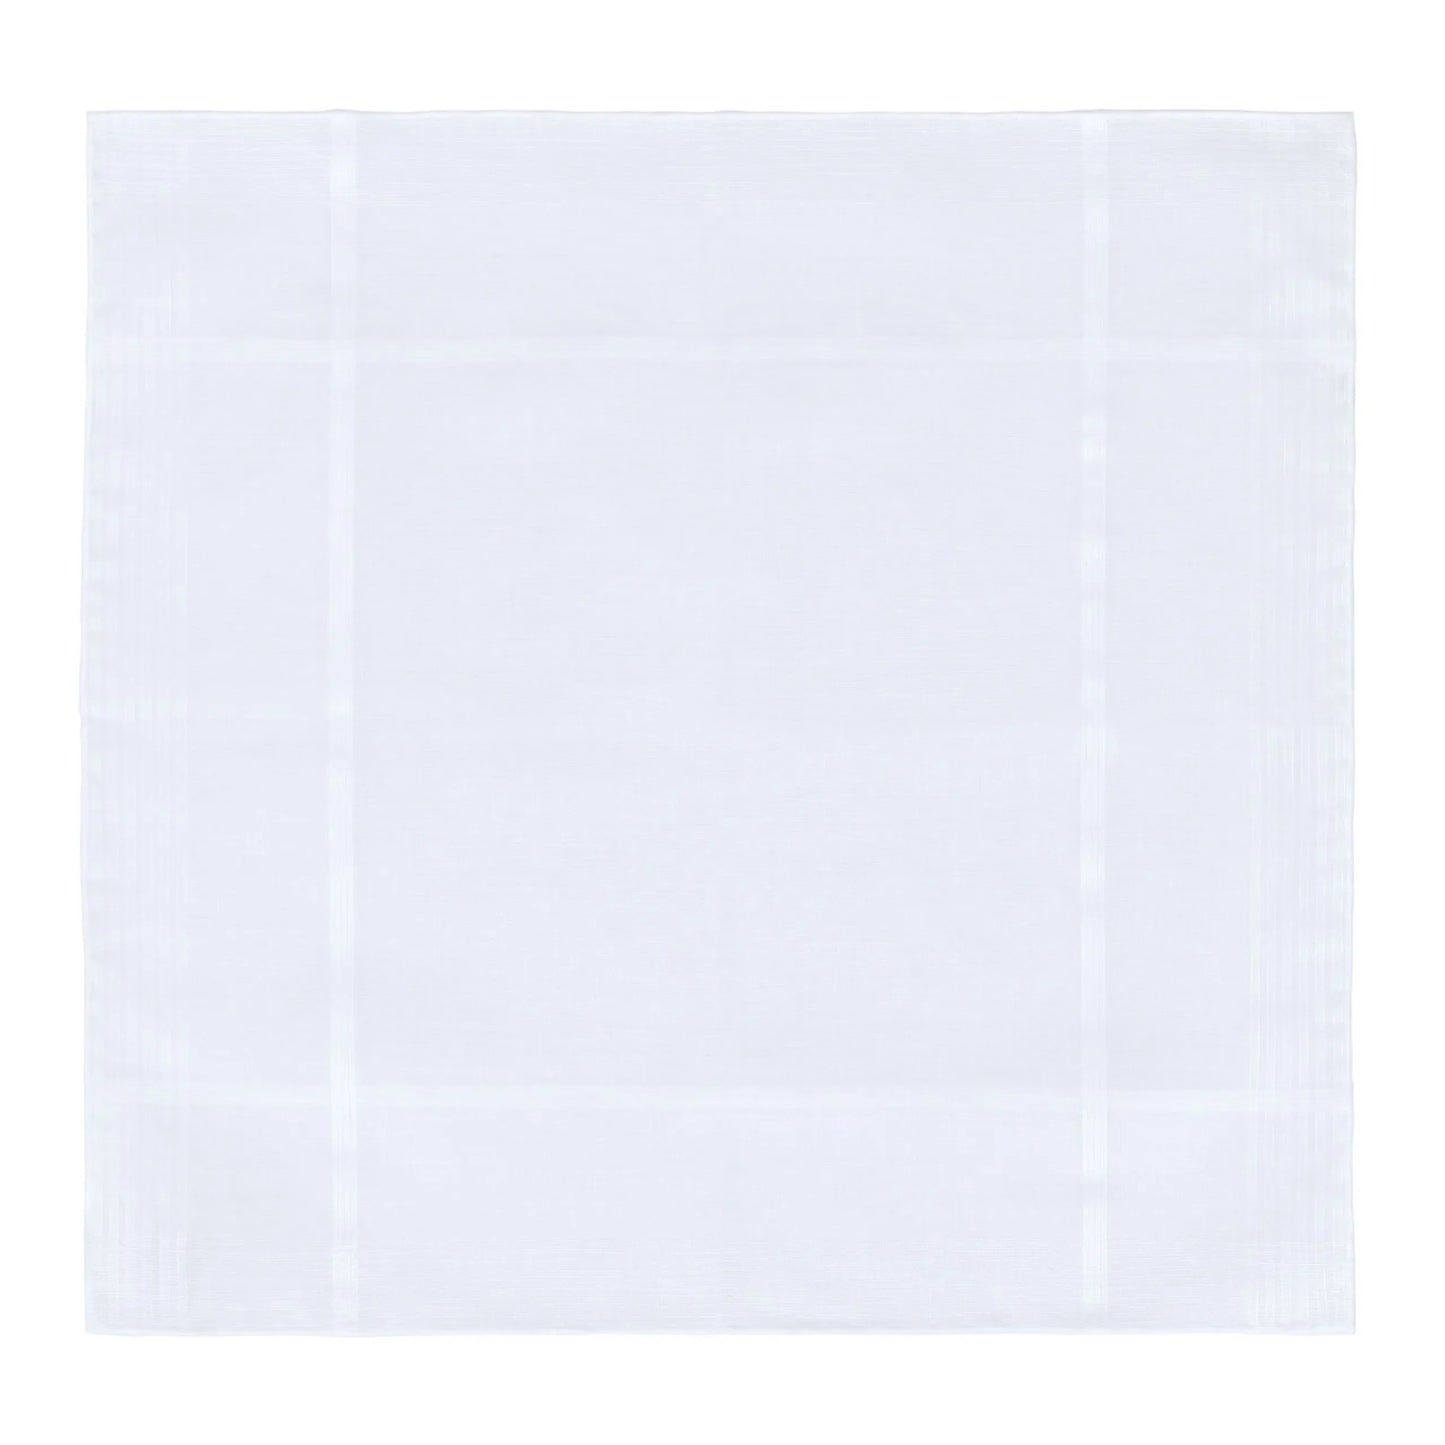 Striped Cotton Pocket Square in White